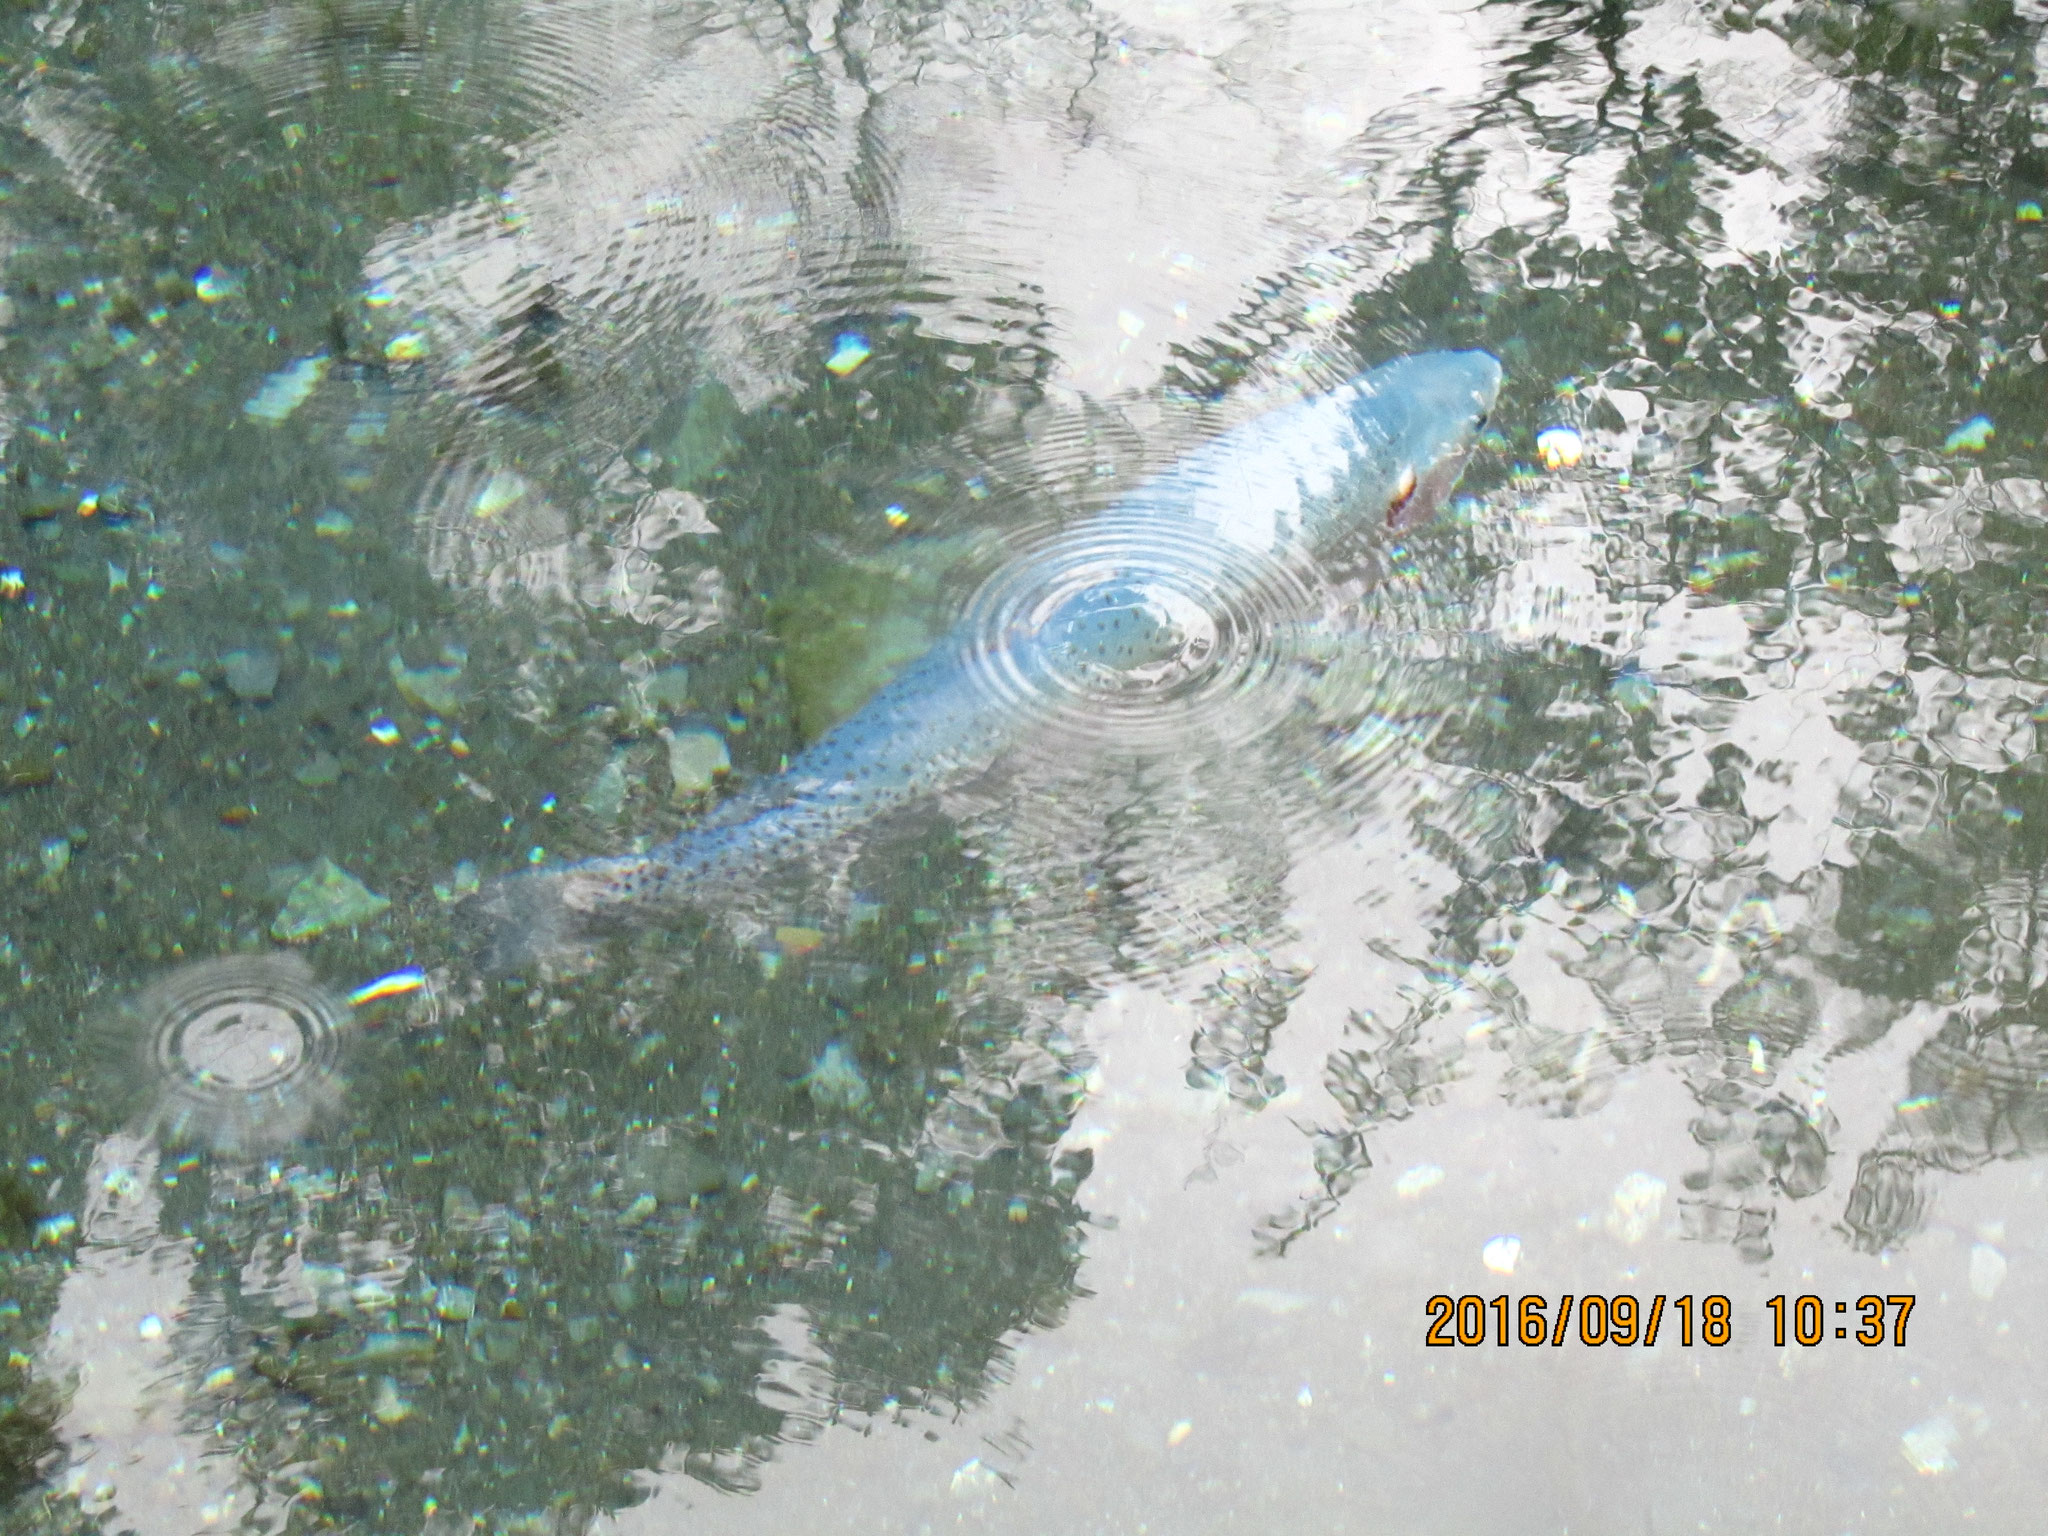 悠々と泳ぐ青い魚。